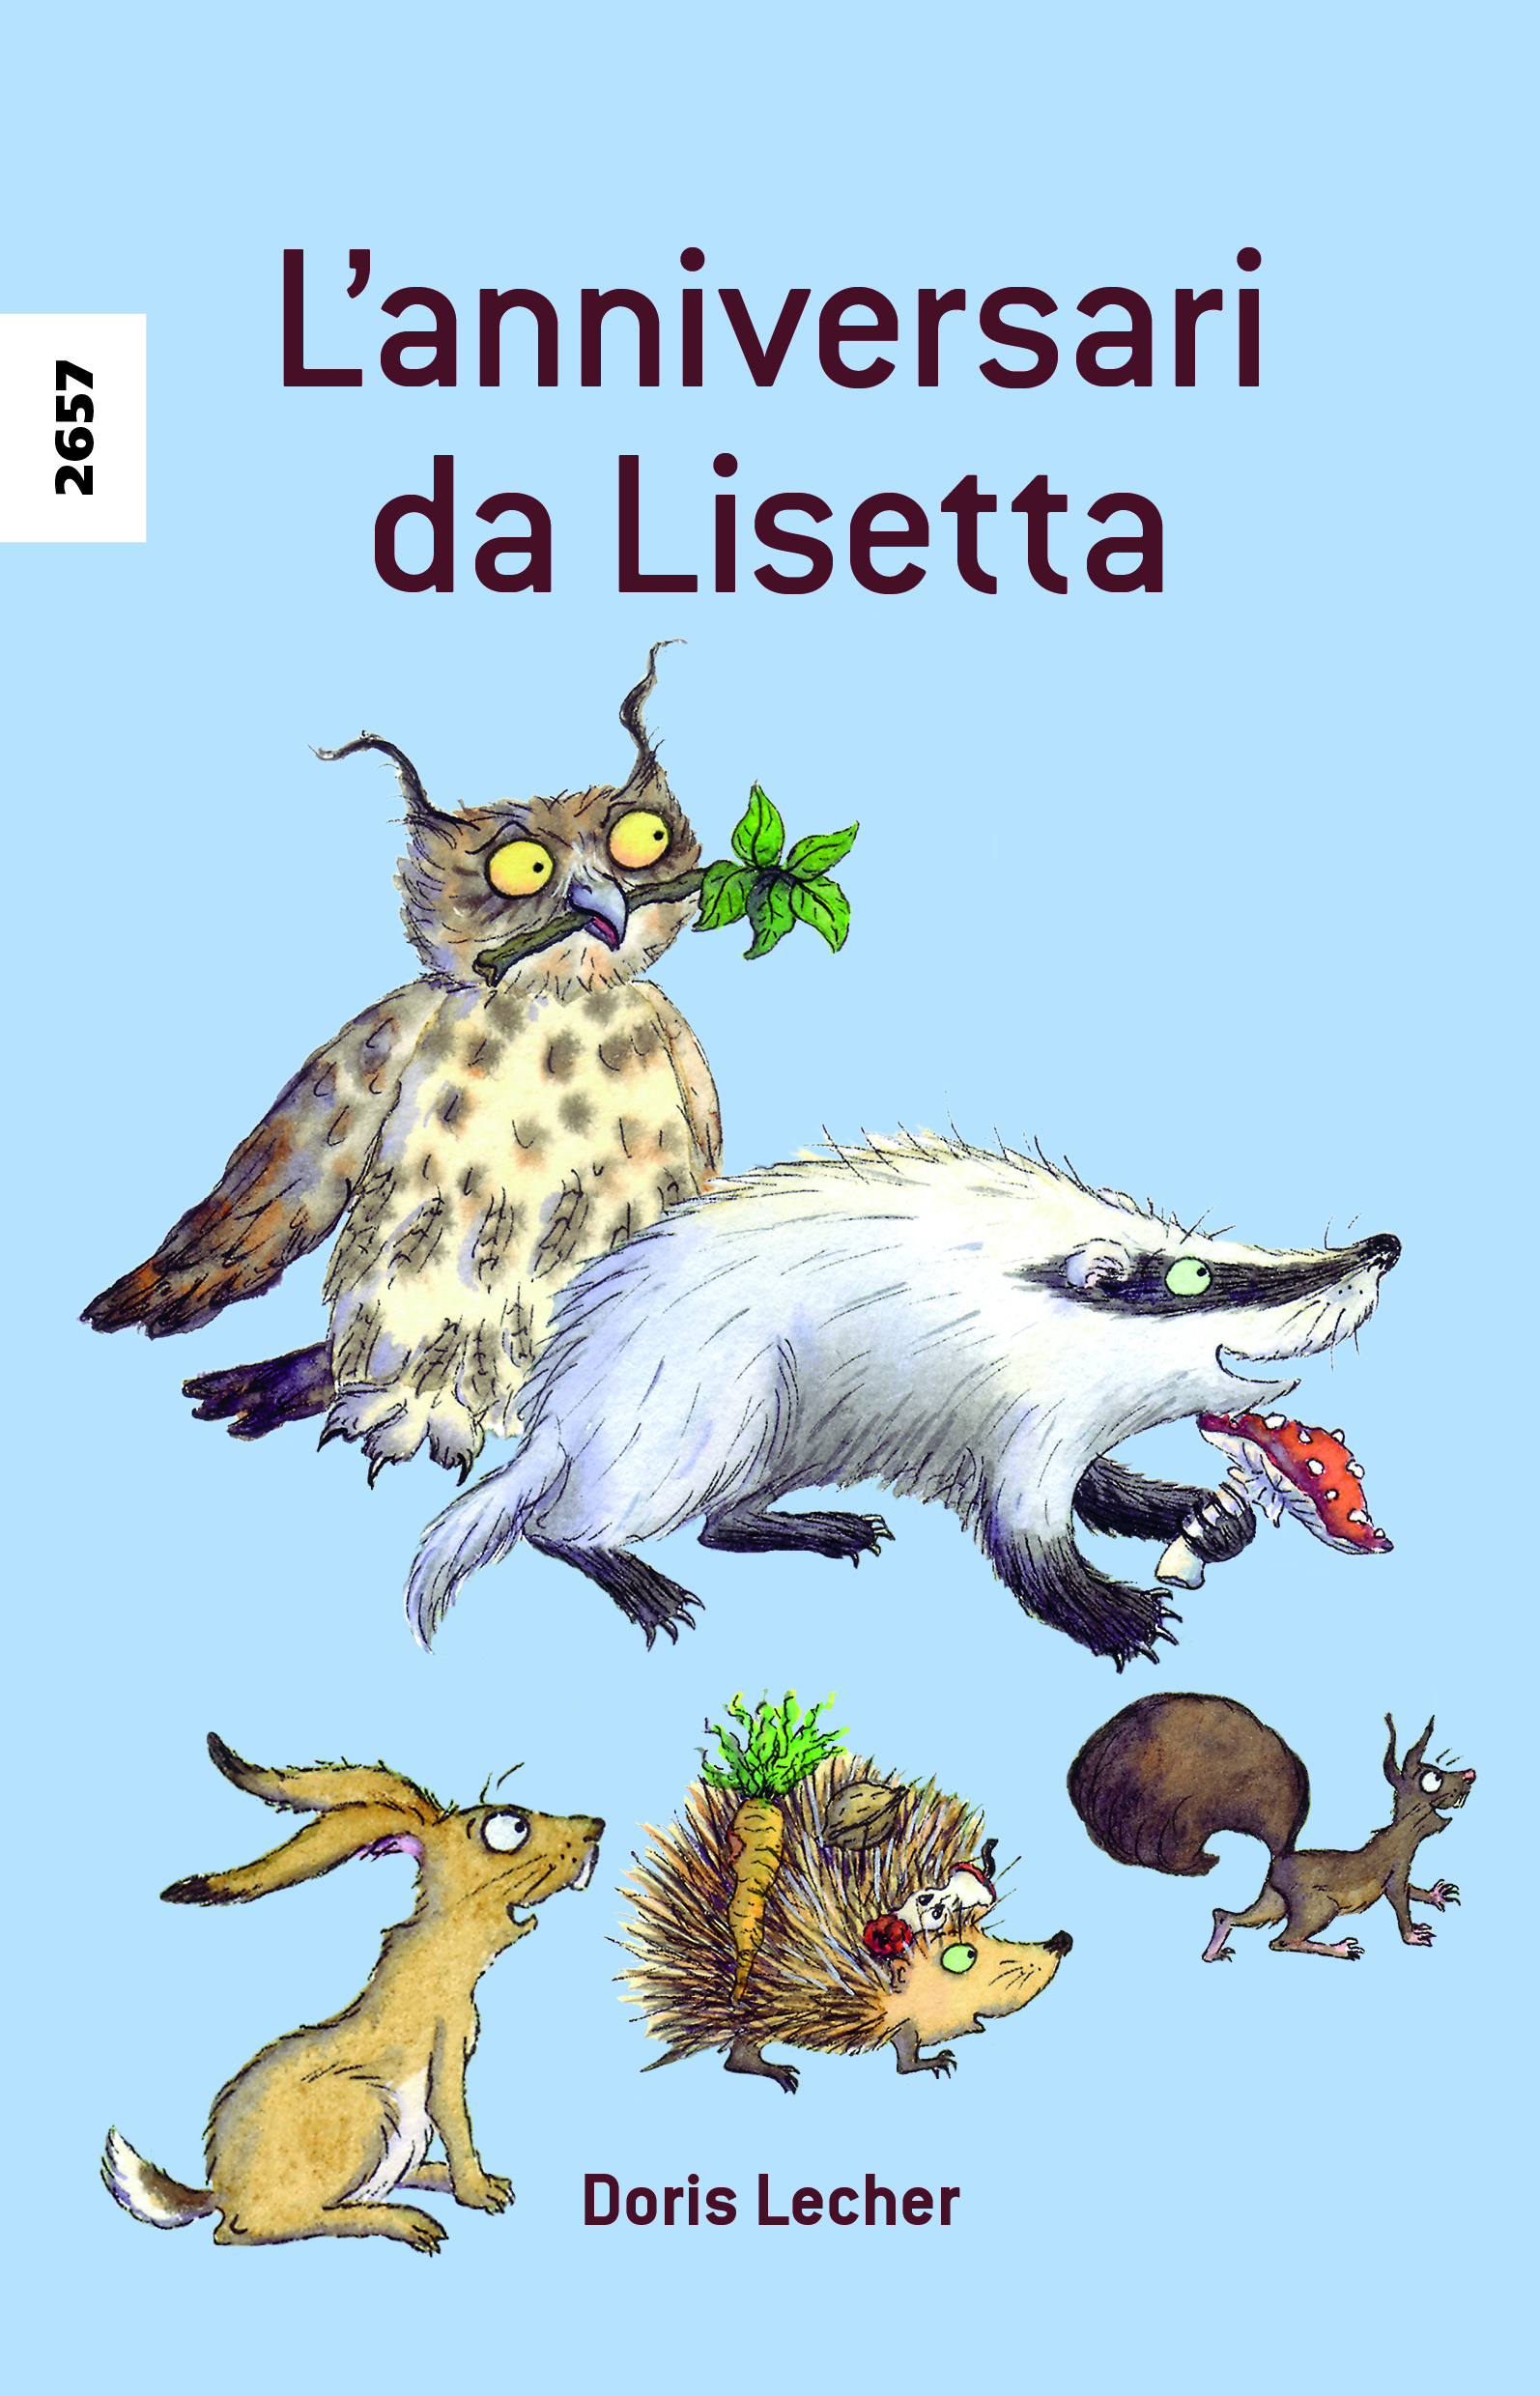 L'anniversari da Lisetta (Vallader), ein Kinderbuch von Doris Lecher, SJW Verlag, Tiergeschichte mit Bastelbogen